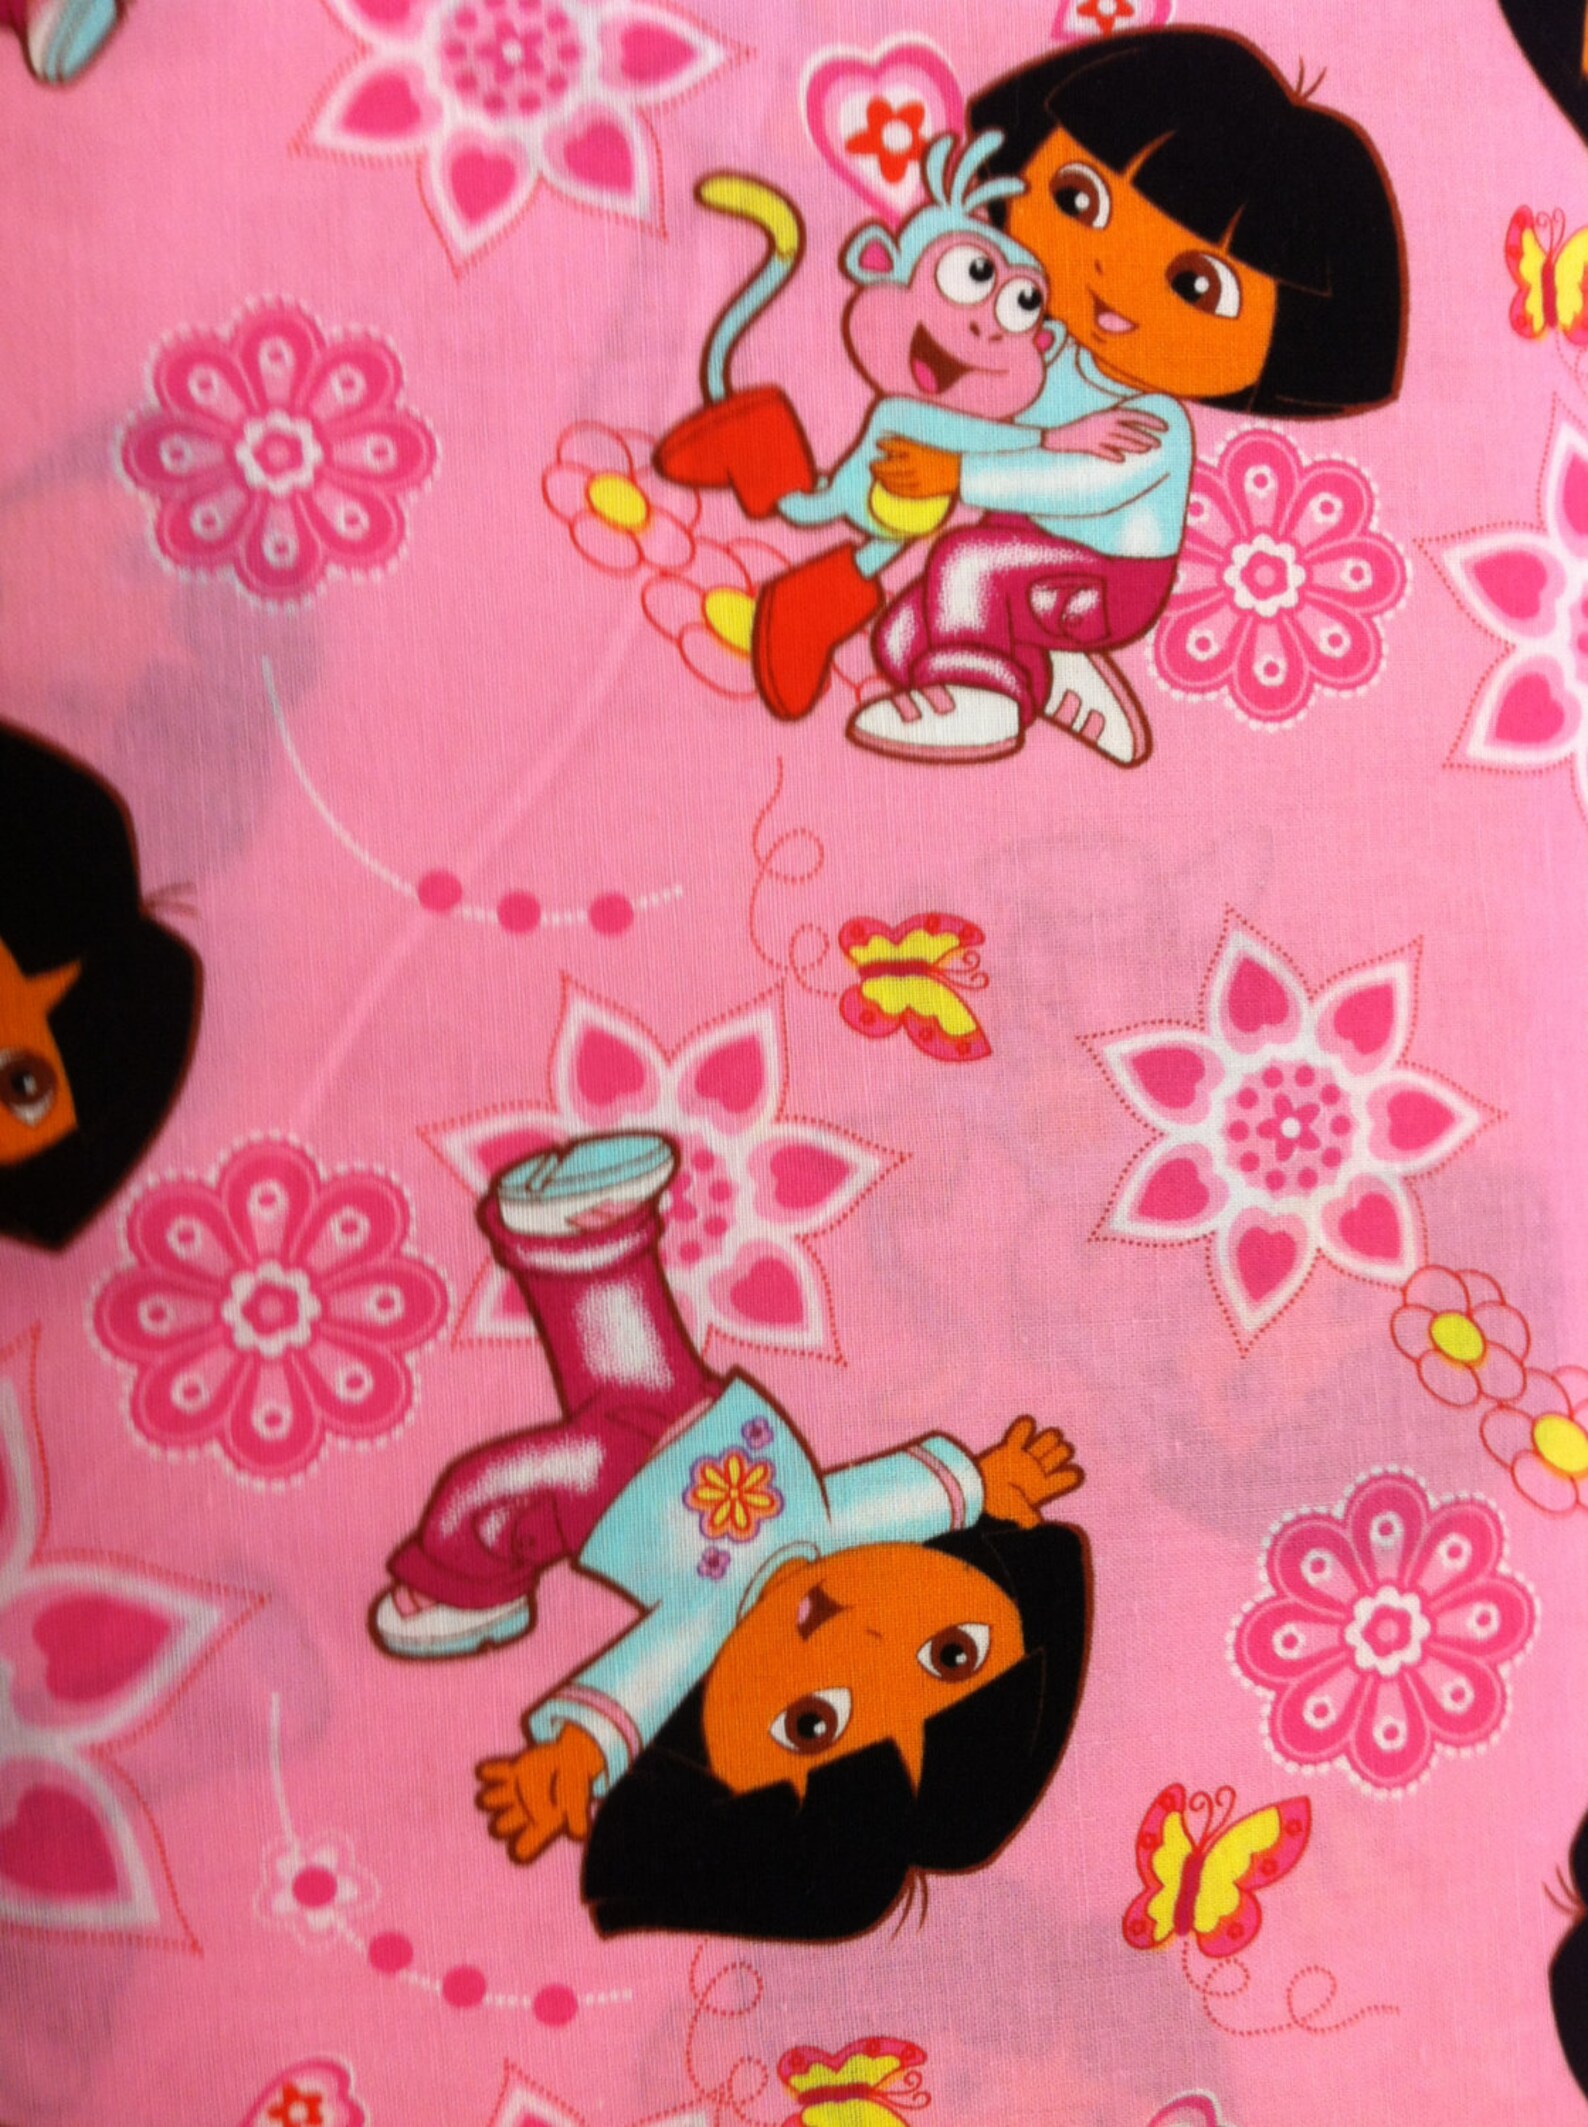 Dora the Explorer Nursing Pillow Cover Breastfeeding Boppy | Etsy